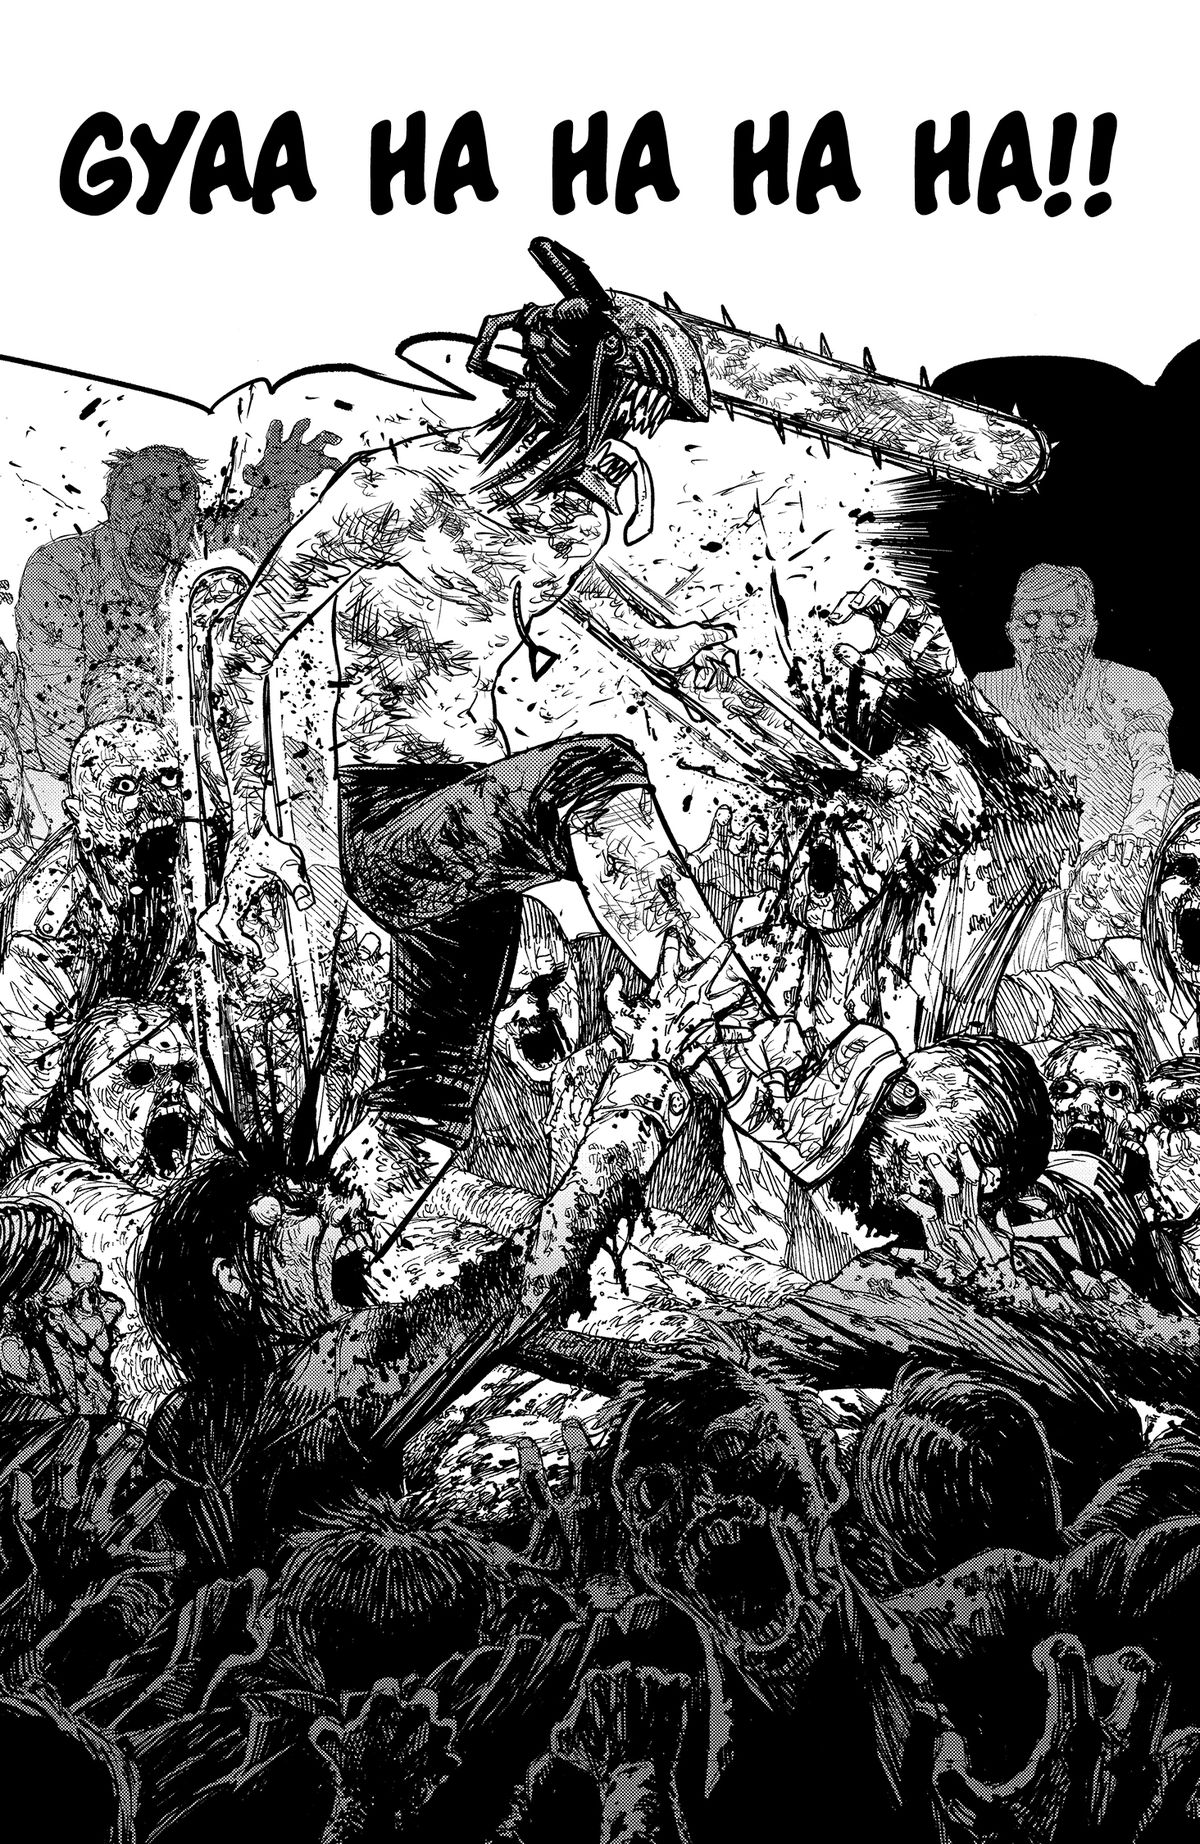 ¿Debería leer el manga Chainsaw Man después del anime?